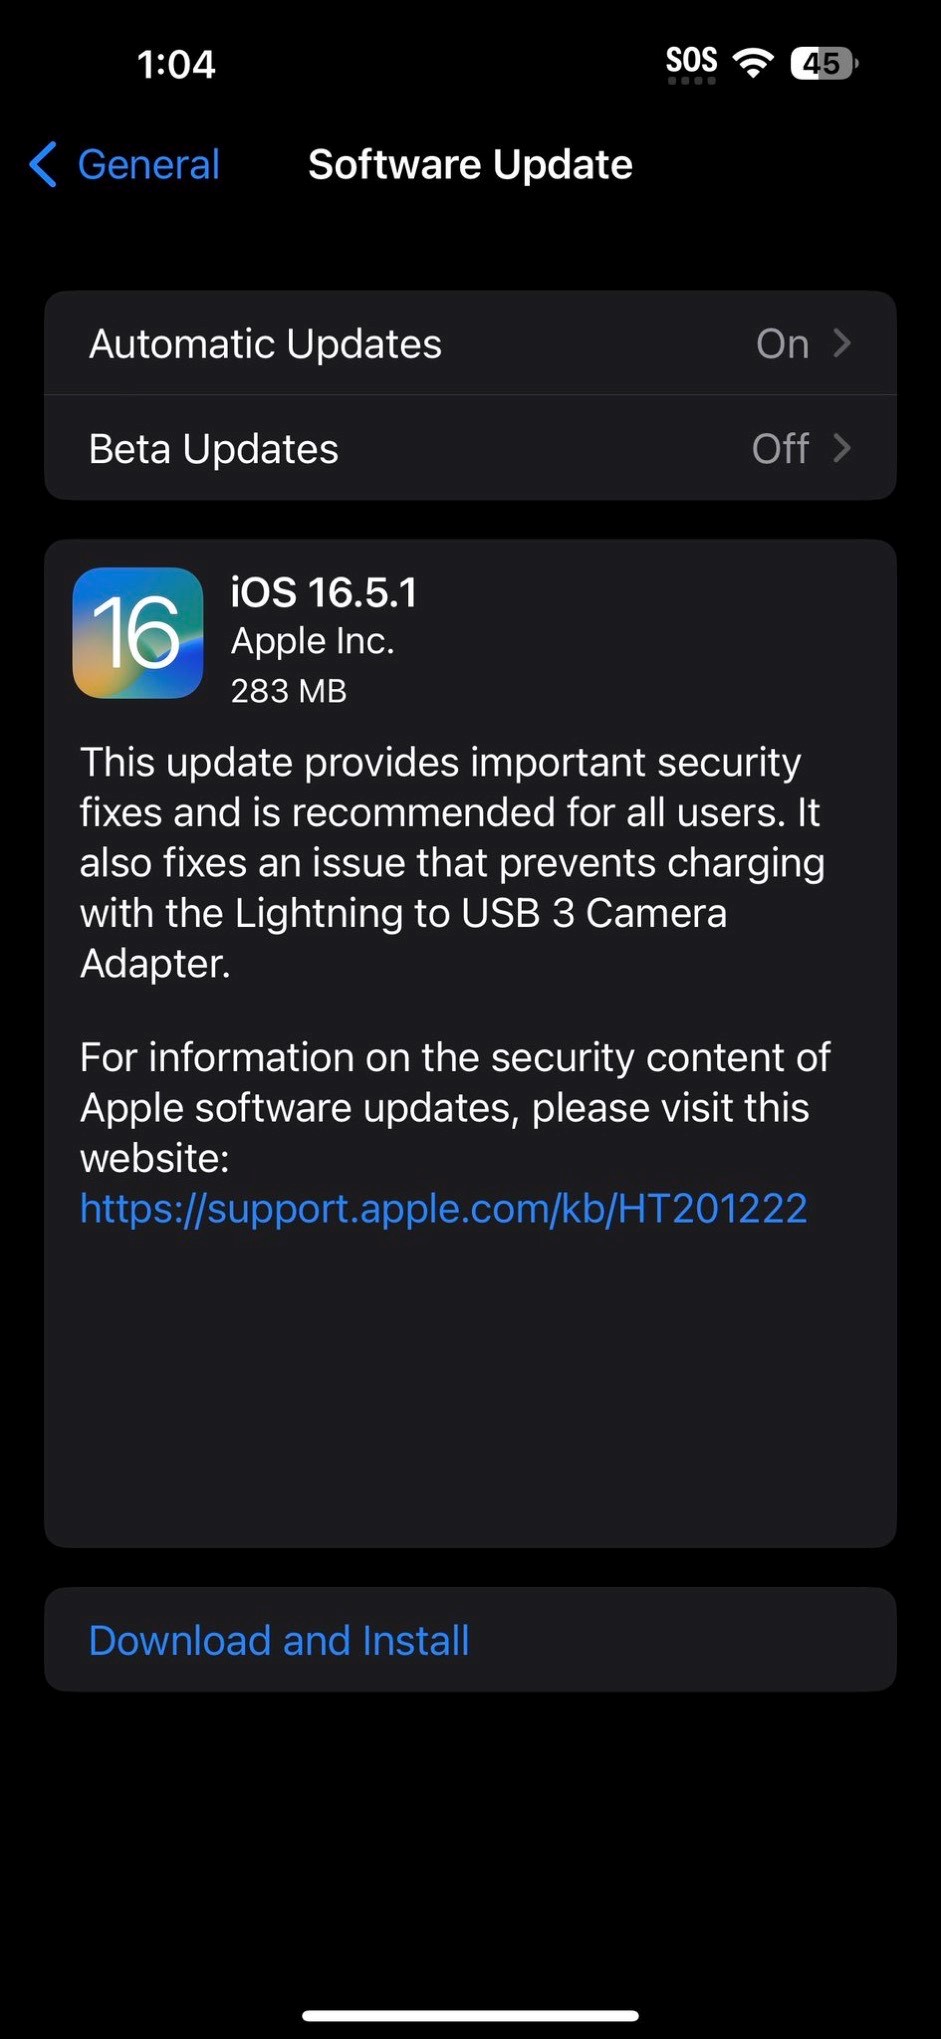  iOS 16